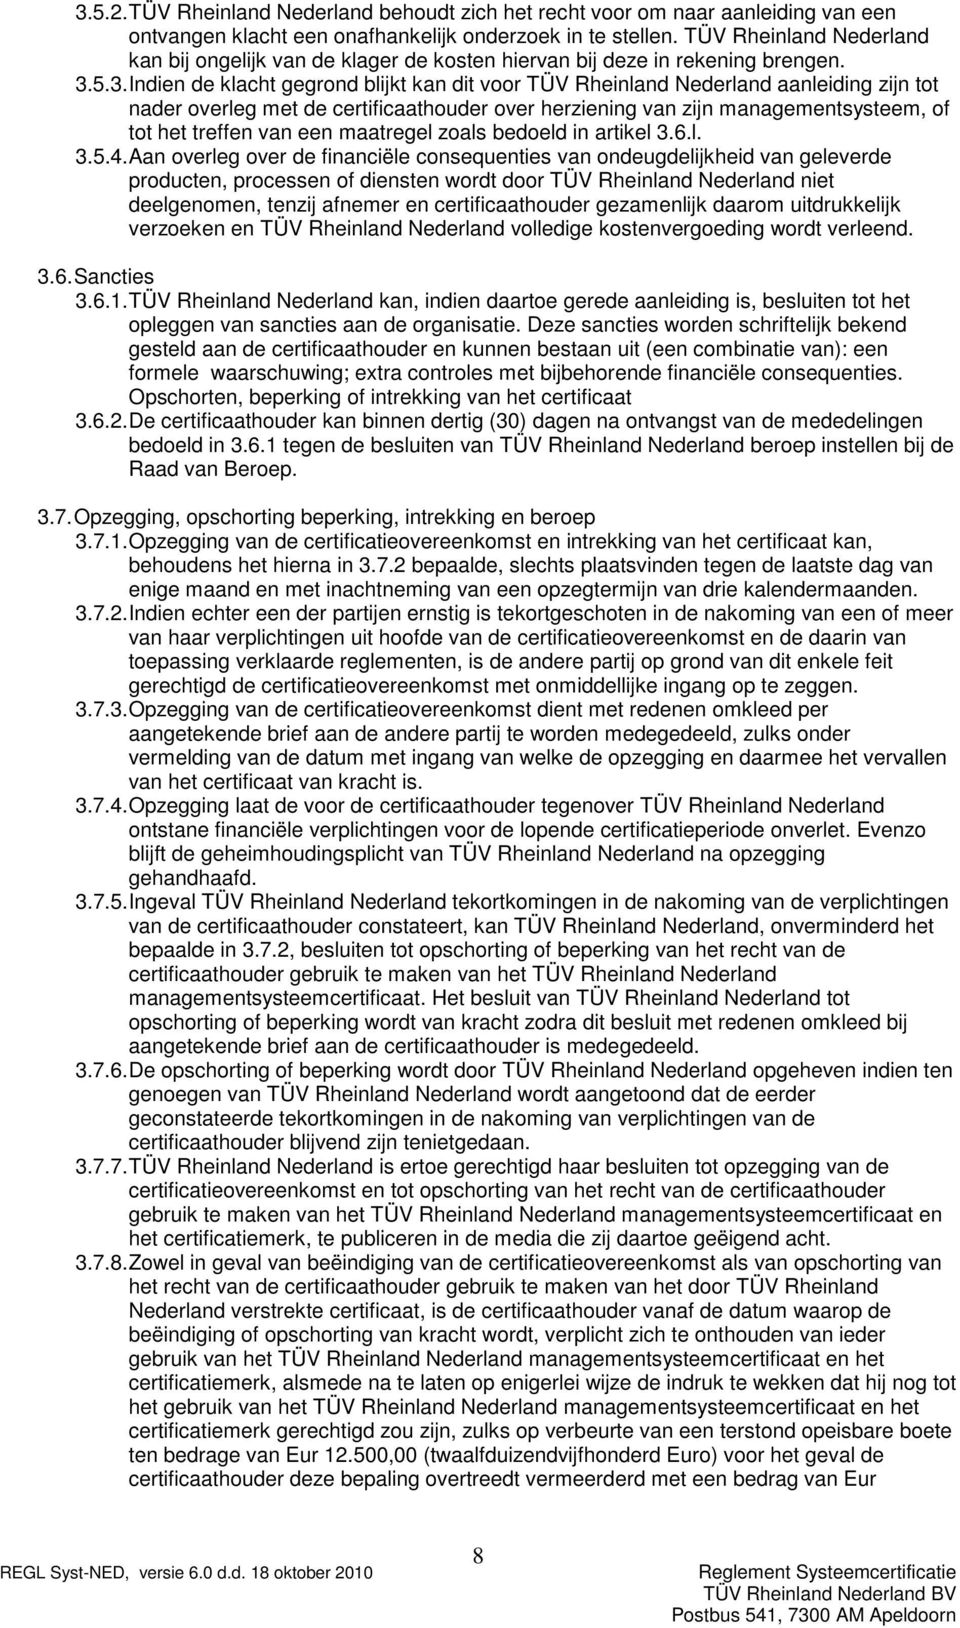 5.3. Indien de klacht gegrond blijkt kan dit voor TÜV Rheinland Nederland aanleiding zijn tot nader overleg met de certificaathouder over herziening van zijn managementsysteem, of tot het treffen van